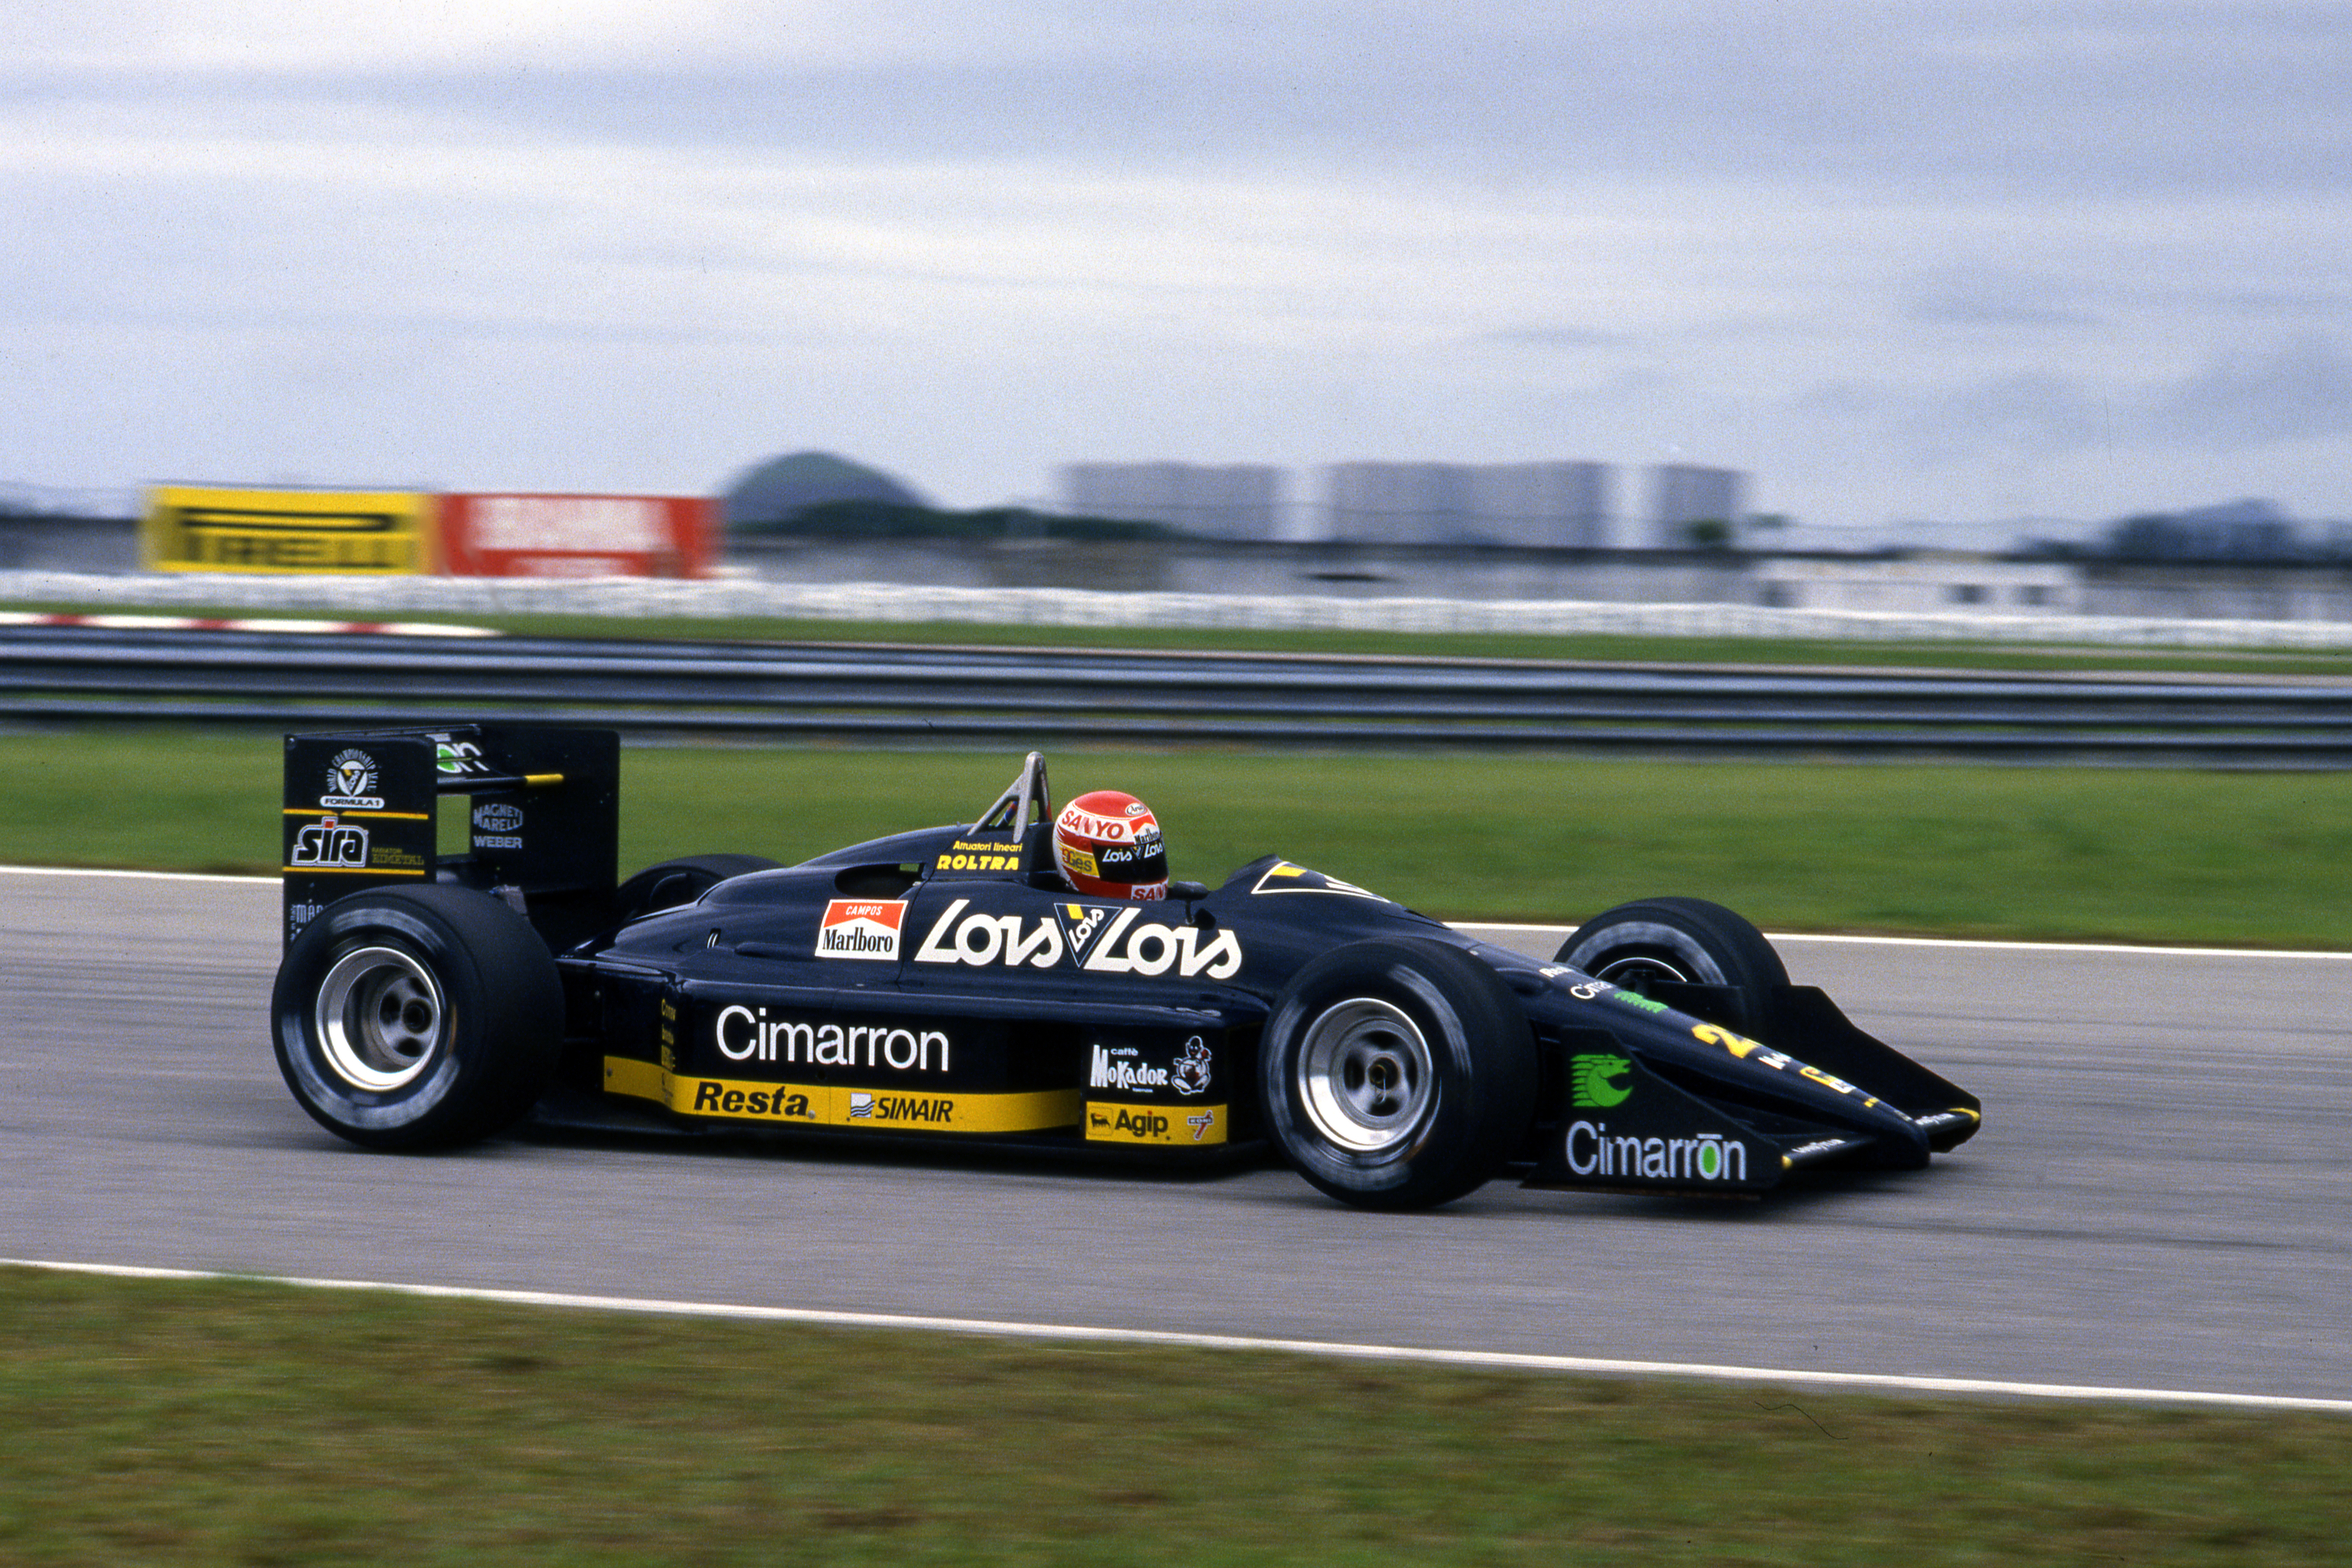 Brazilian Grand Prix Jacarepagua (bra) 01 03 04 1988